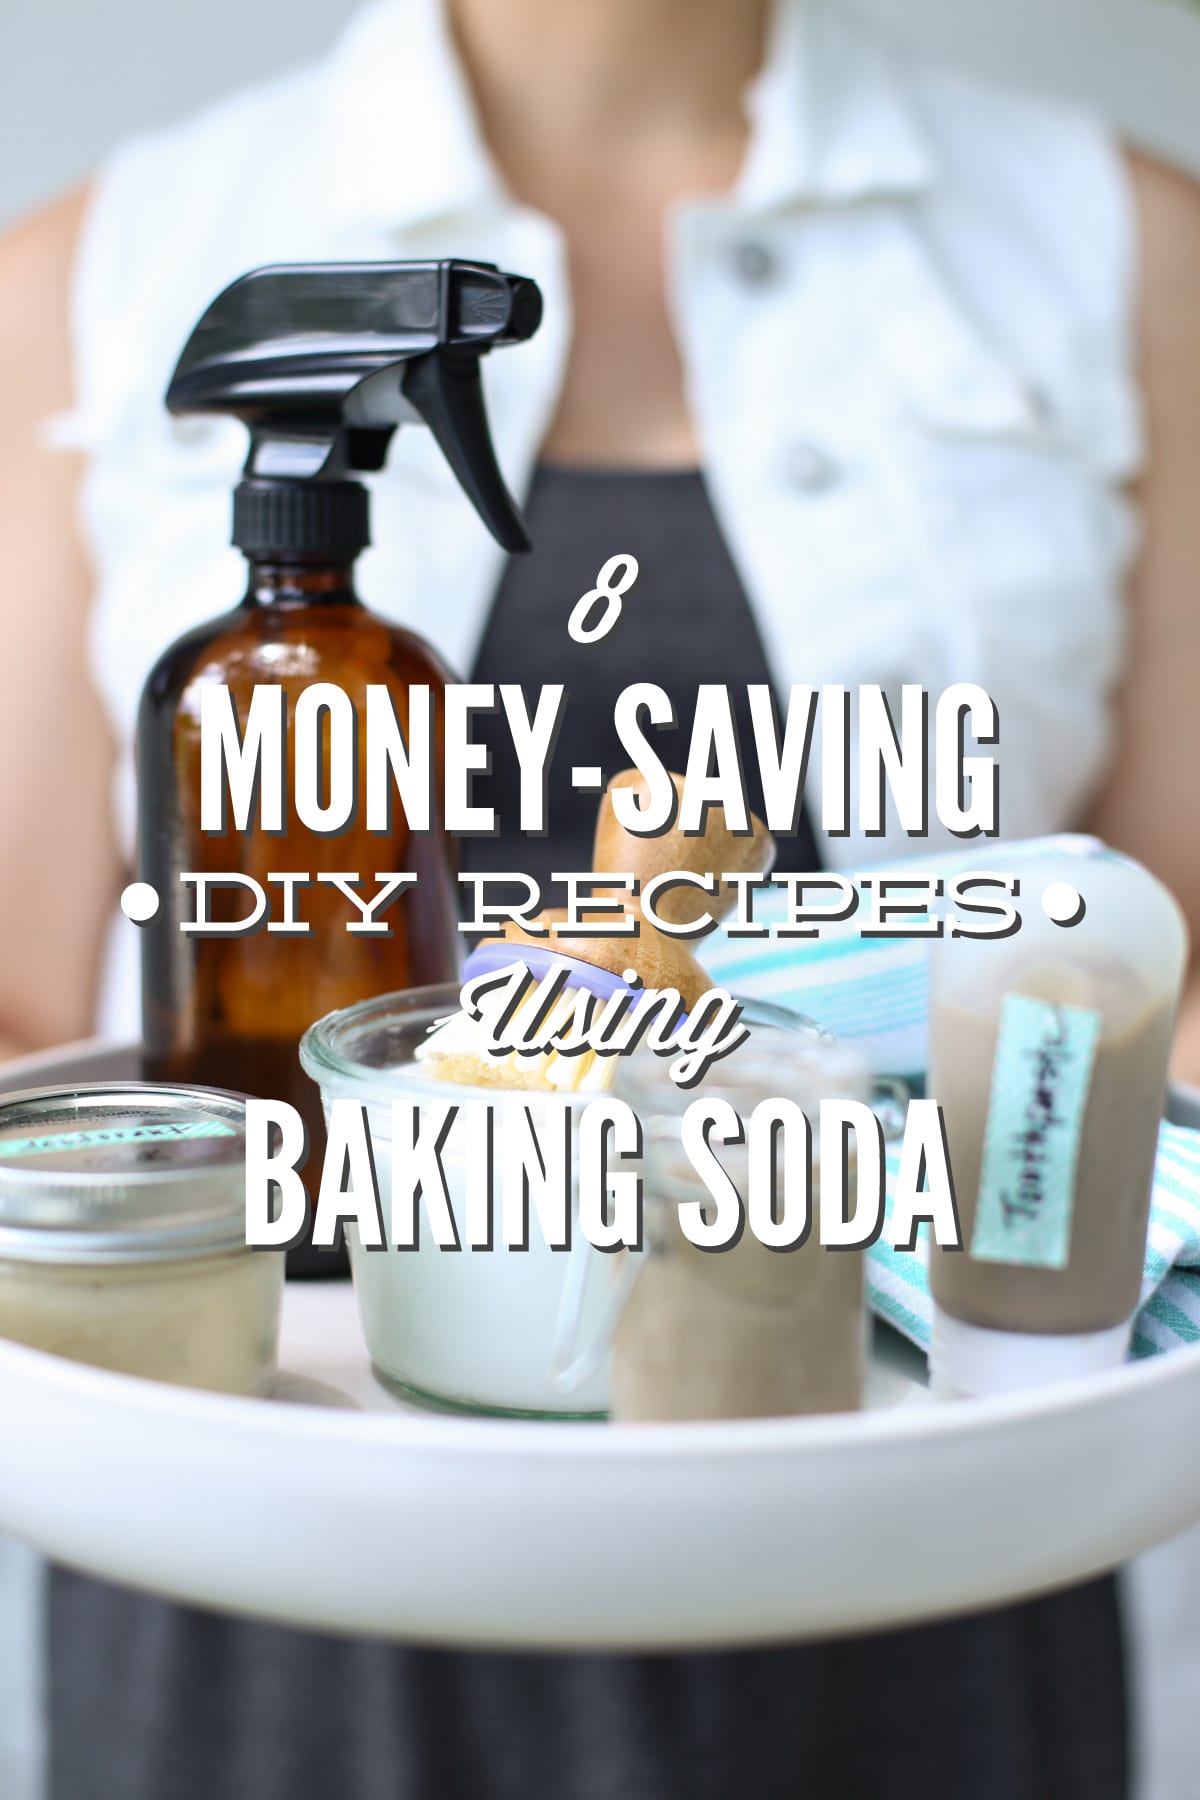 8 Money-Saving DIY Recipes Using Baking Soda